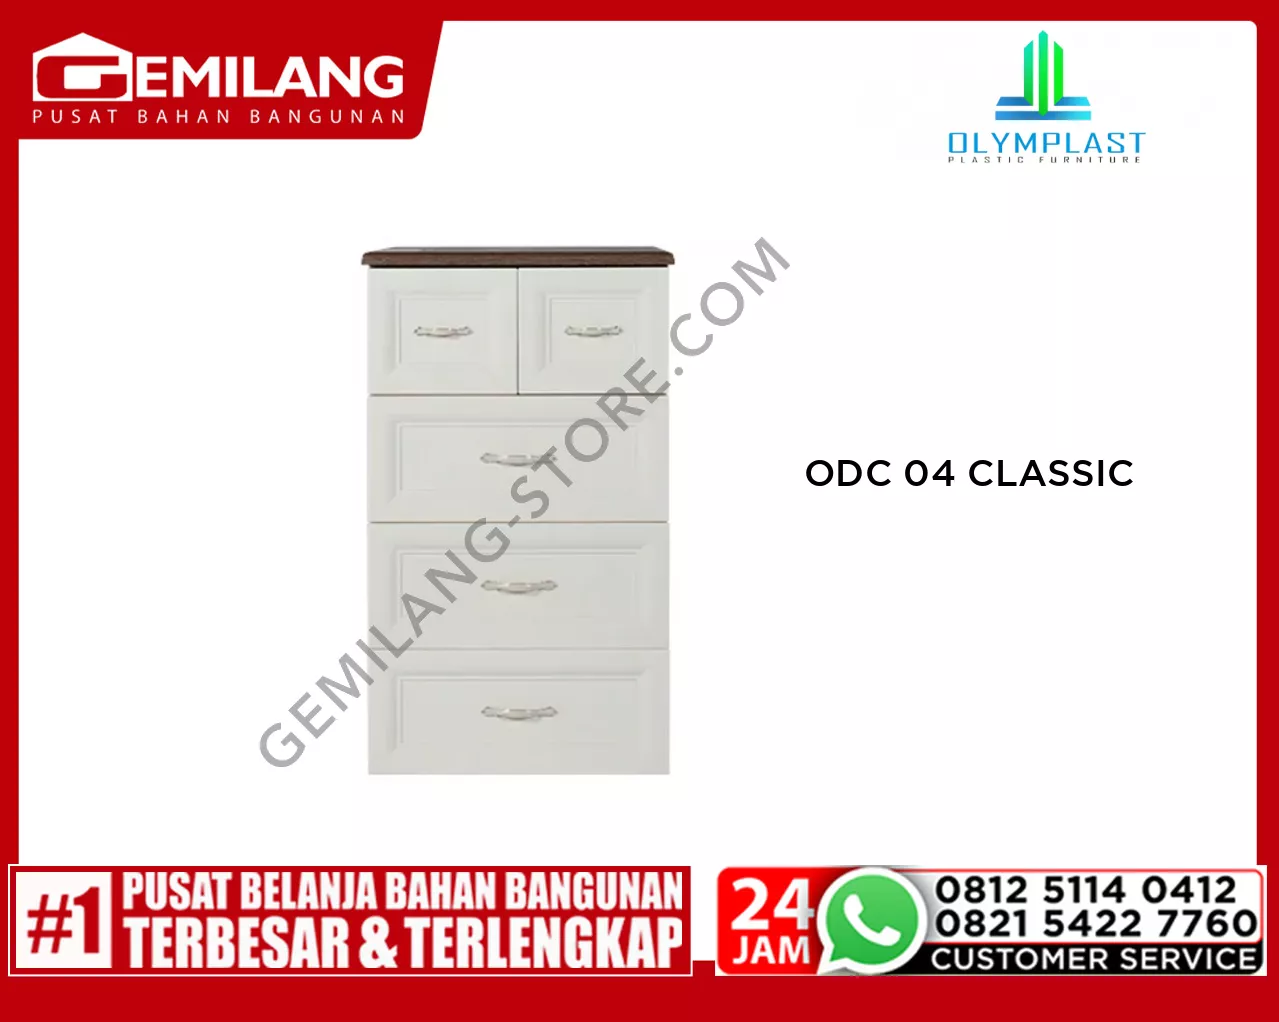 OLYMPLAST ODC 04 CLASSIC B